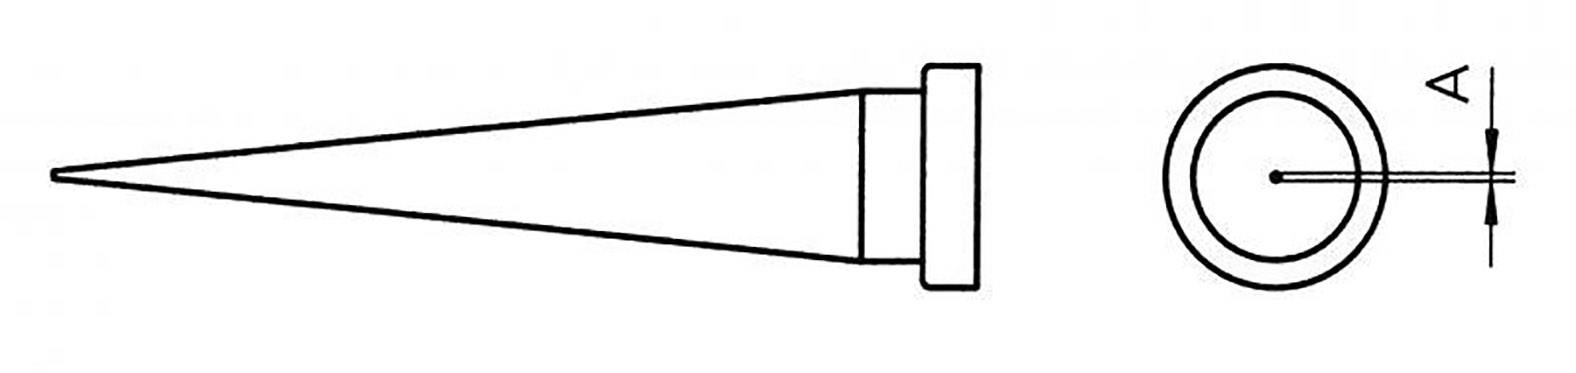 Konický pájecí hrot Weller T0054448199 LT O, 13 mm, 1 ks